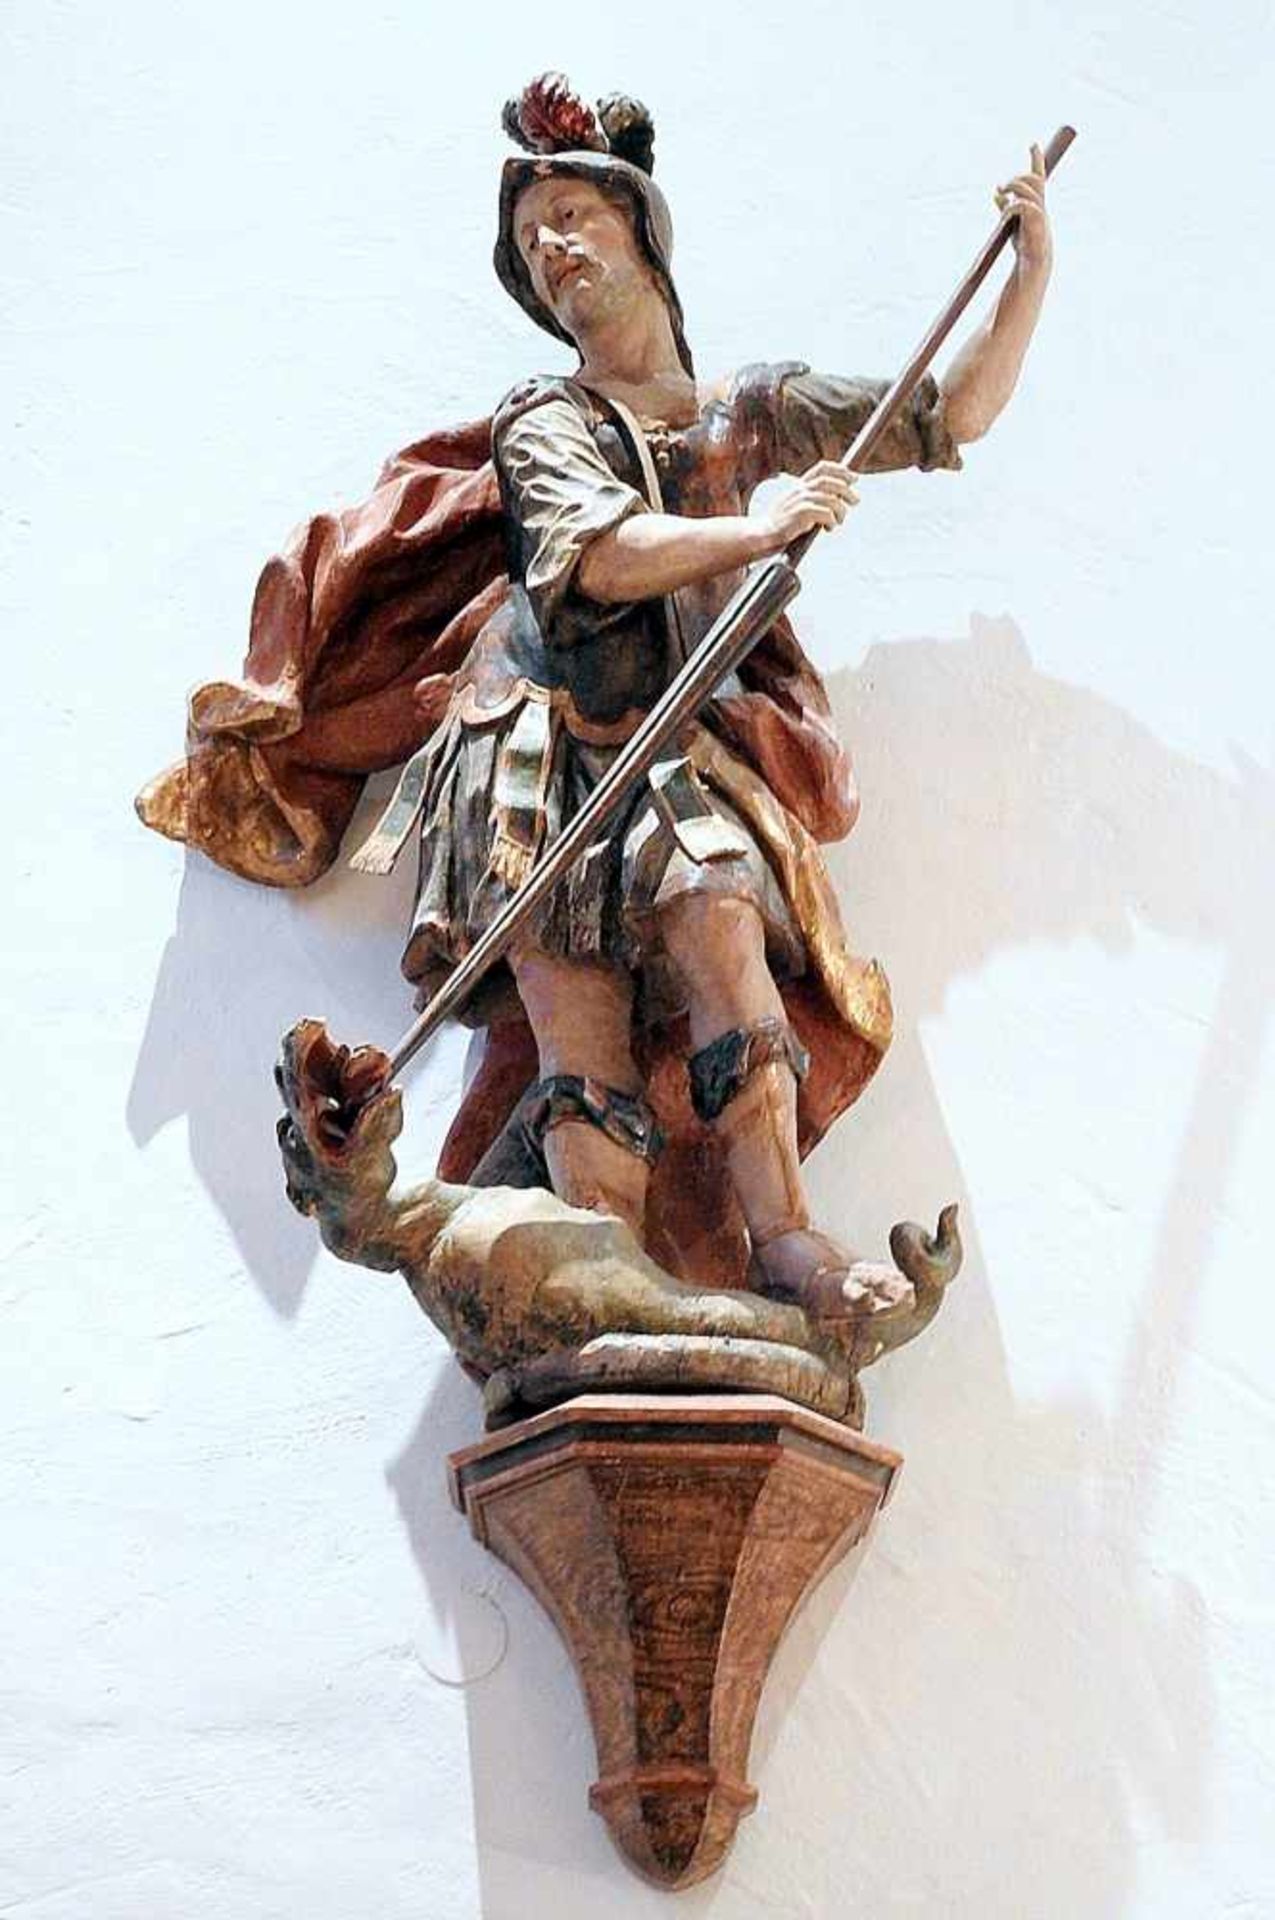 Imposante Heiligenfigur Holz geschnitzt, polychrom gefasst, teils vergoldet, auf Podest. Stehender